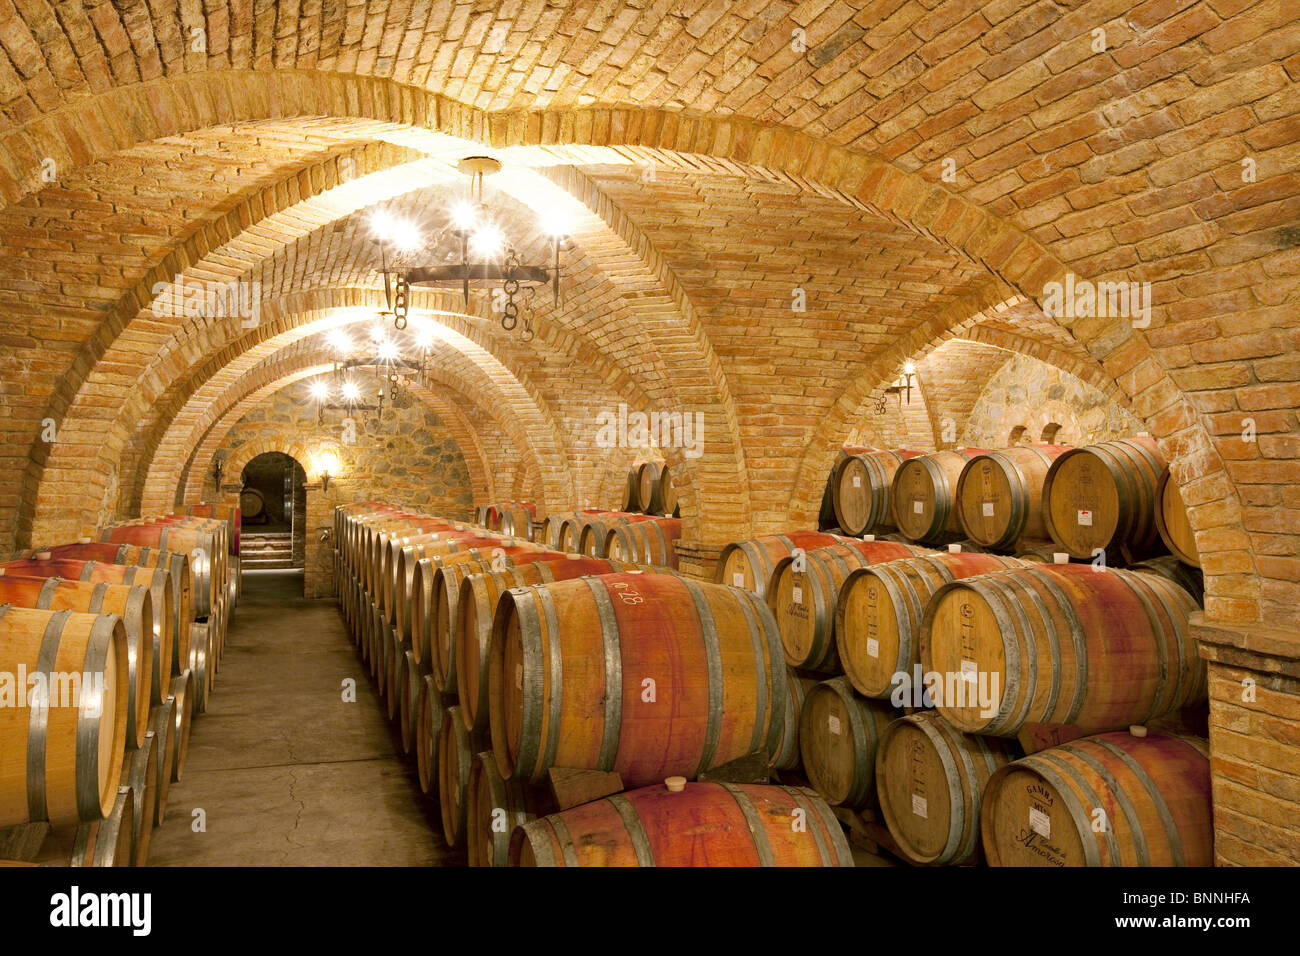 Wine aging in barrels in cellar. Castello di Amerorosa. Napa Valley, California. Property released Stock Photo